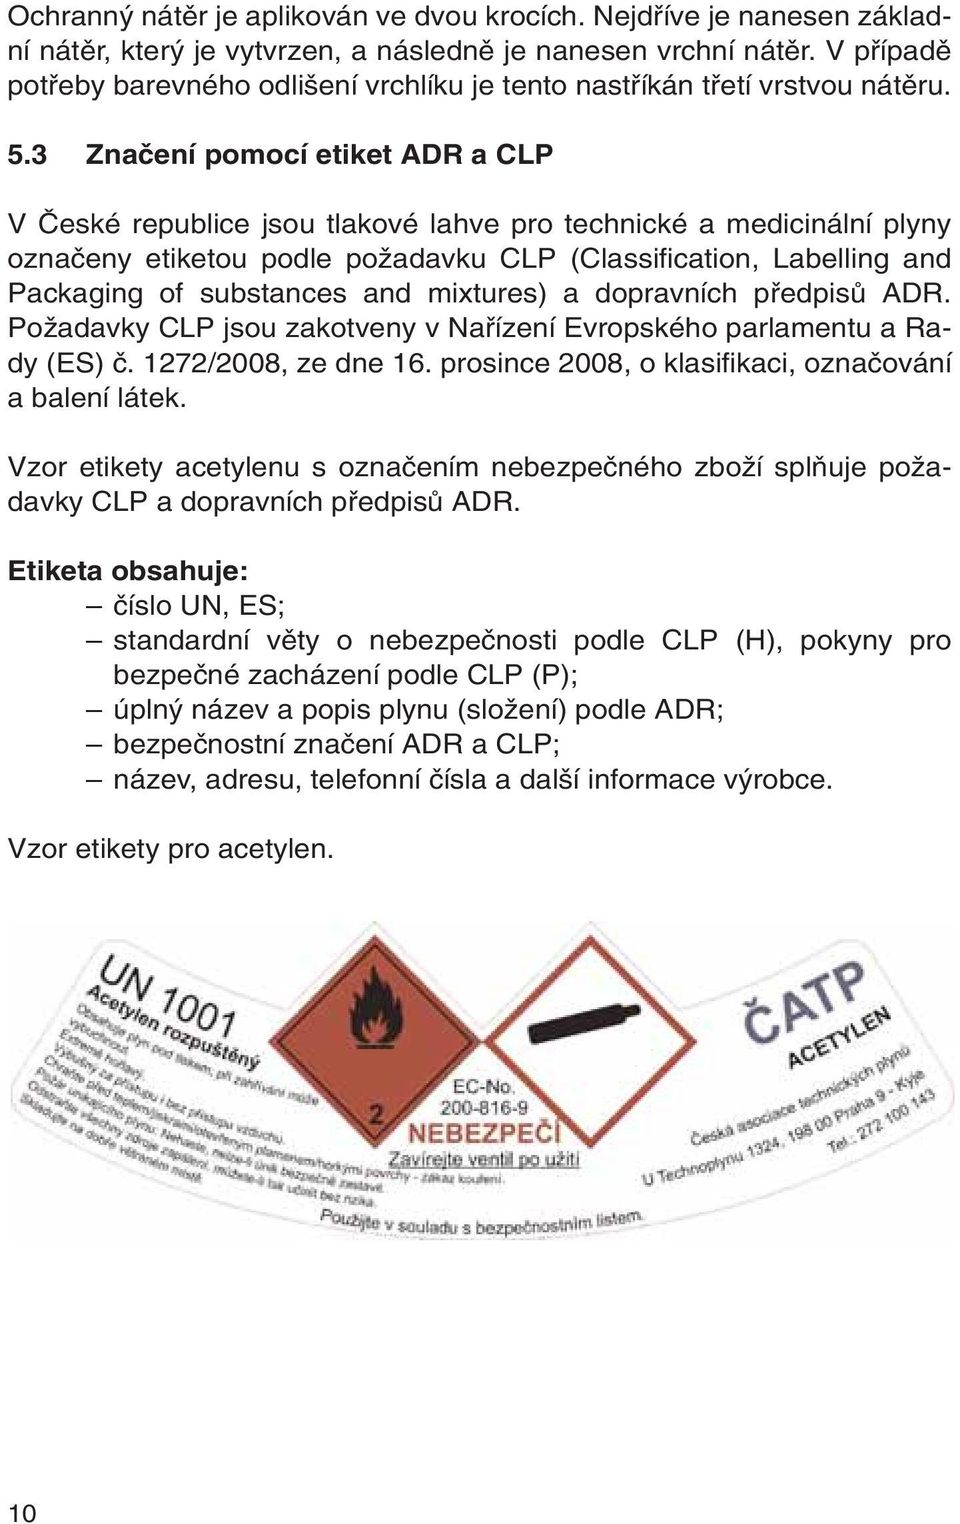 3 Znaãení pomocí etiket ADR a CLP V âeské republice jsou tlakové lahve pro technické a medicinální plyny oznaãeny etiketou podle poïadavku CLP (Classification, Labelling and Packaging of substances